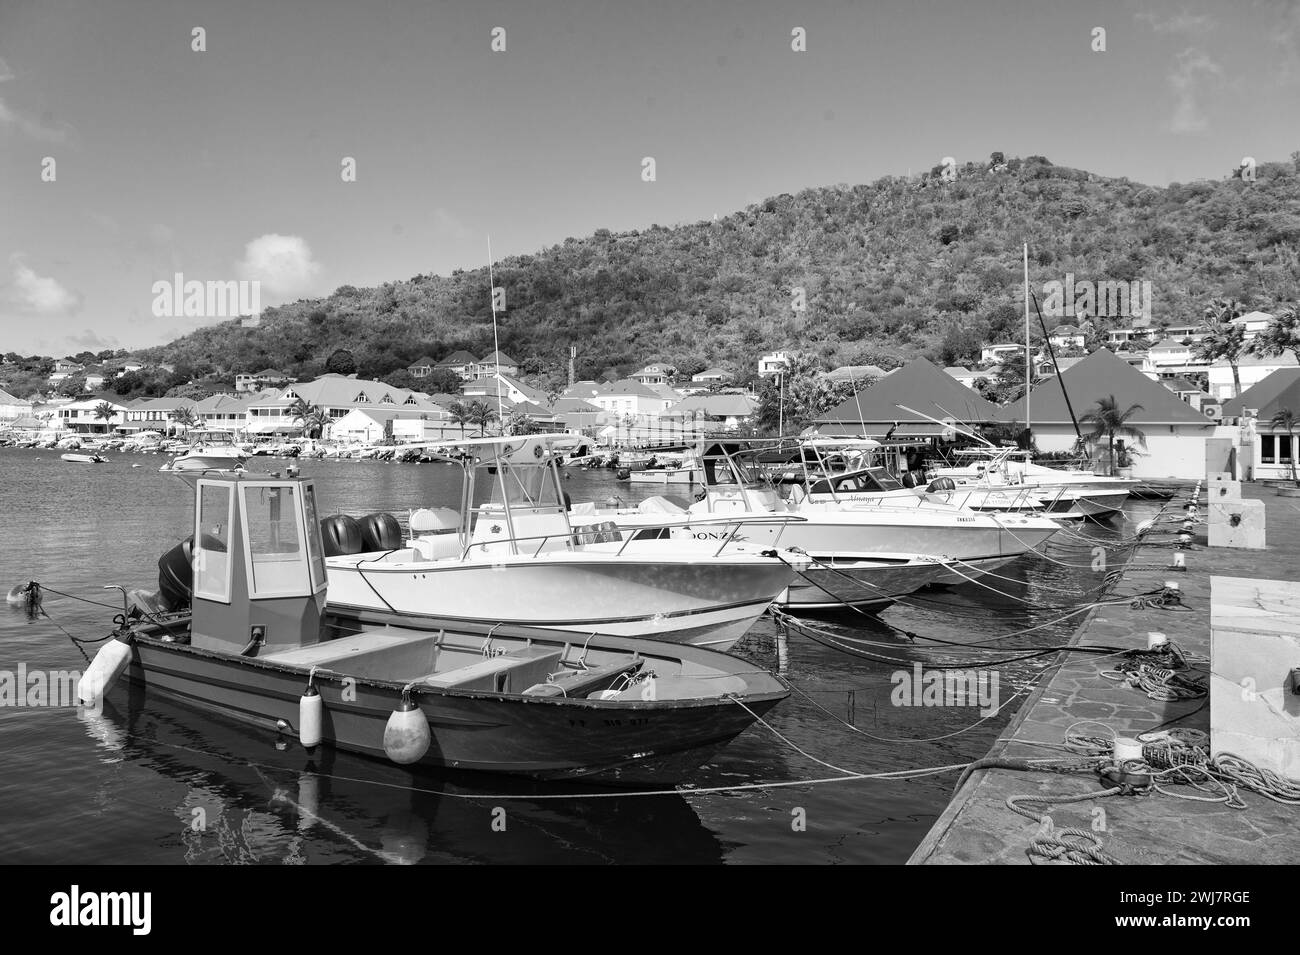 St Barts, Antille francesi - 25 gennaio 2016: Porto con barca in estate Foto Stock